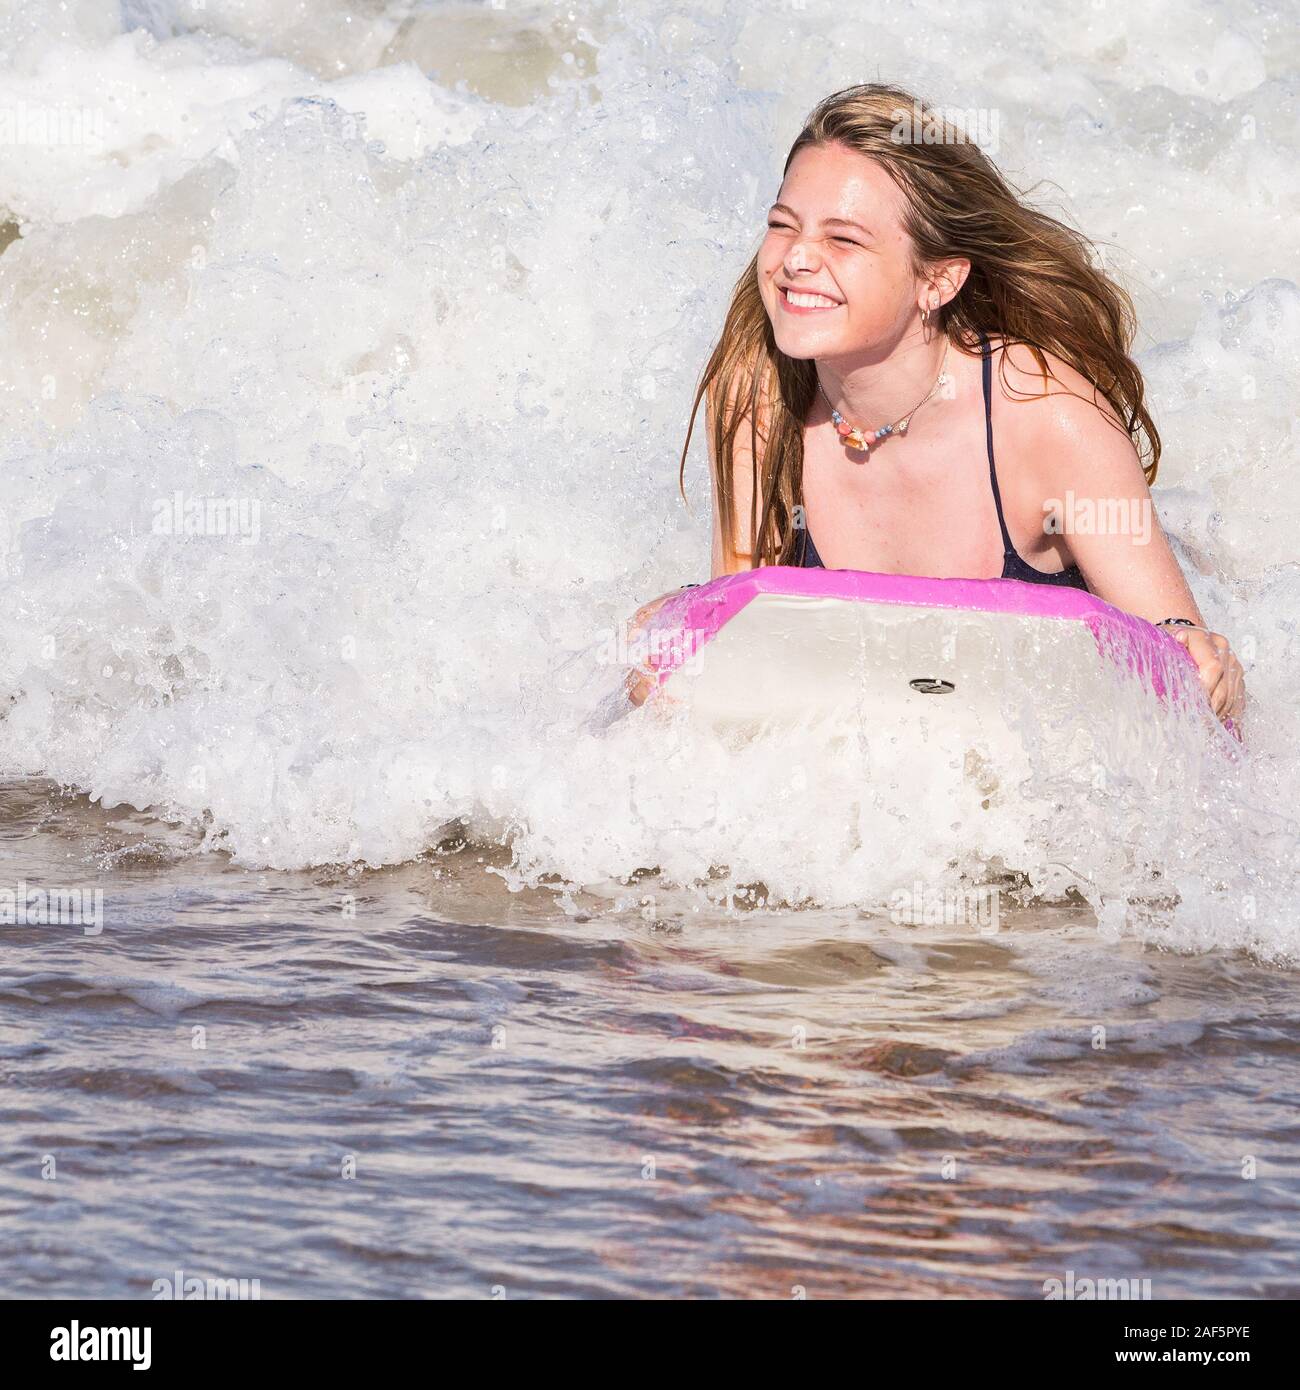 Avon, Outer Banks, North Carolina. Ragazza adolescente boogie boarding. (Modello rilasciato) Foto Stock